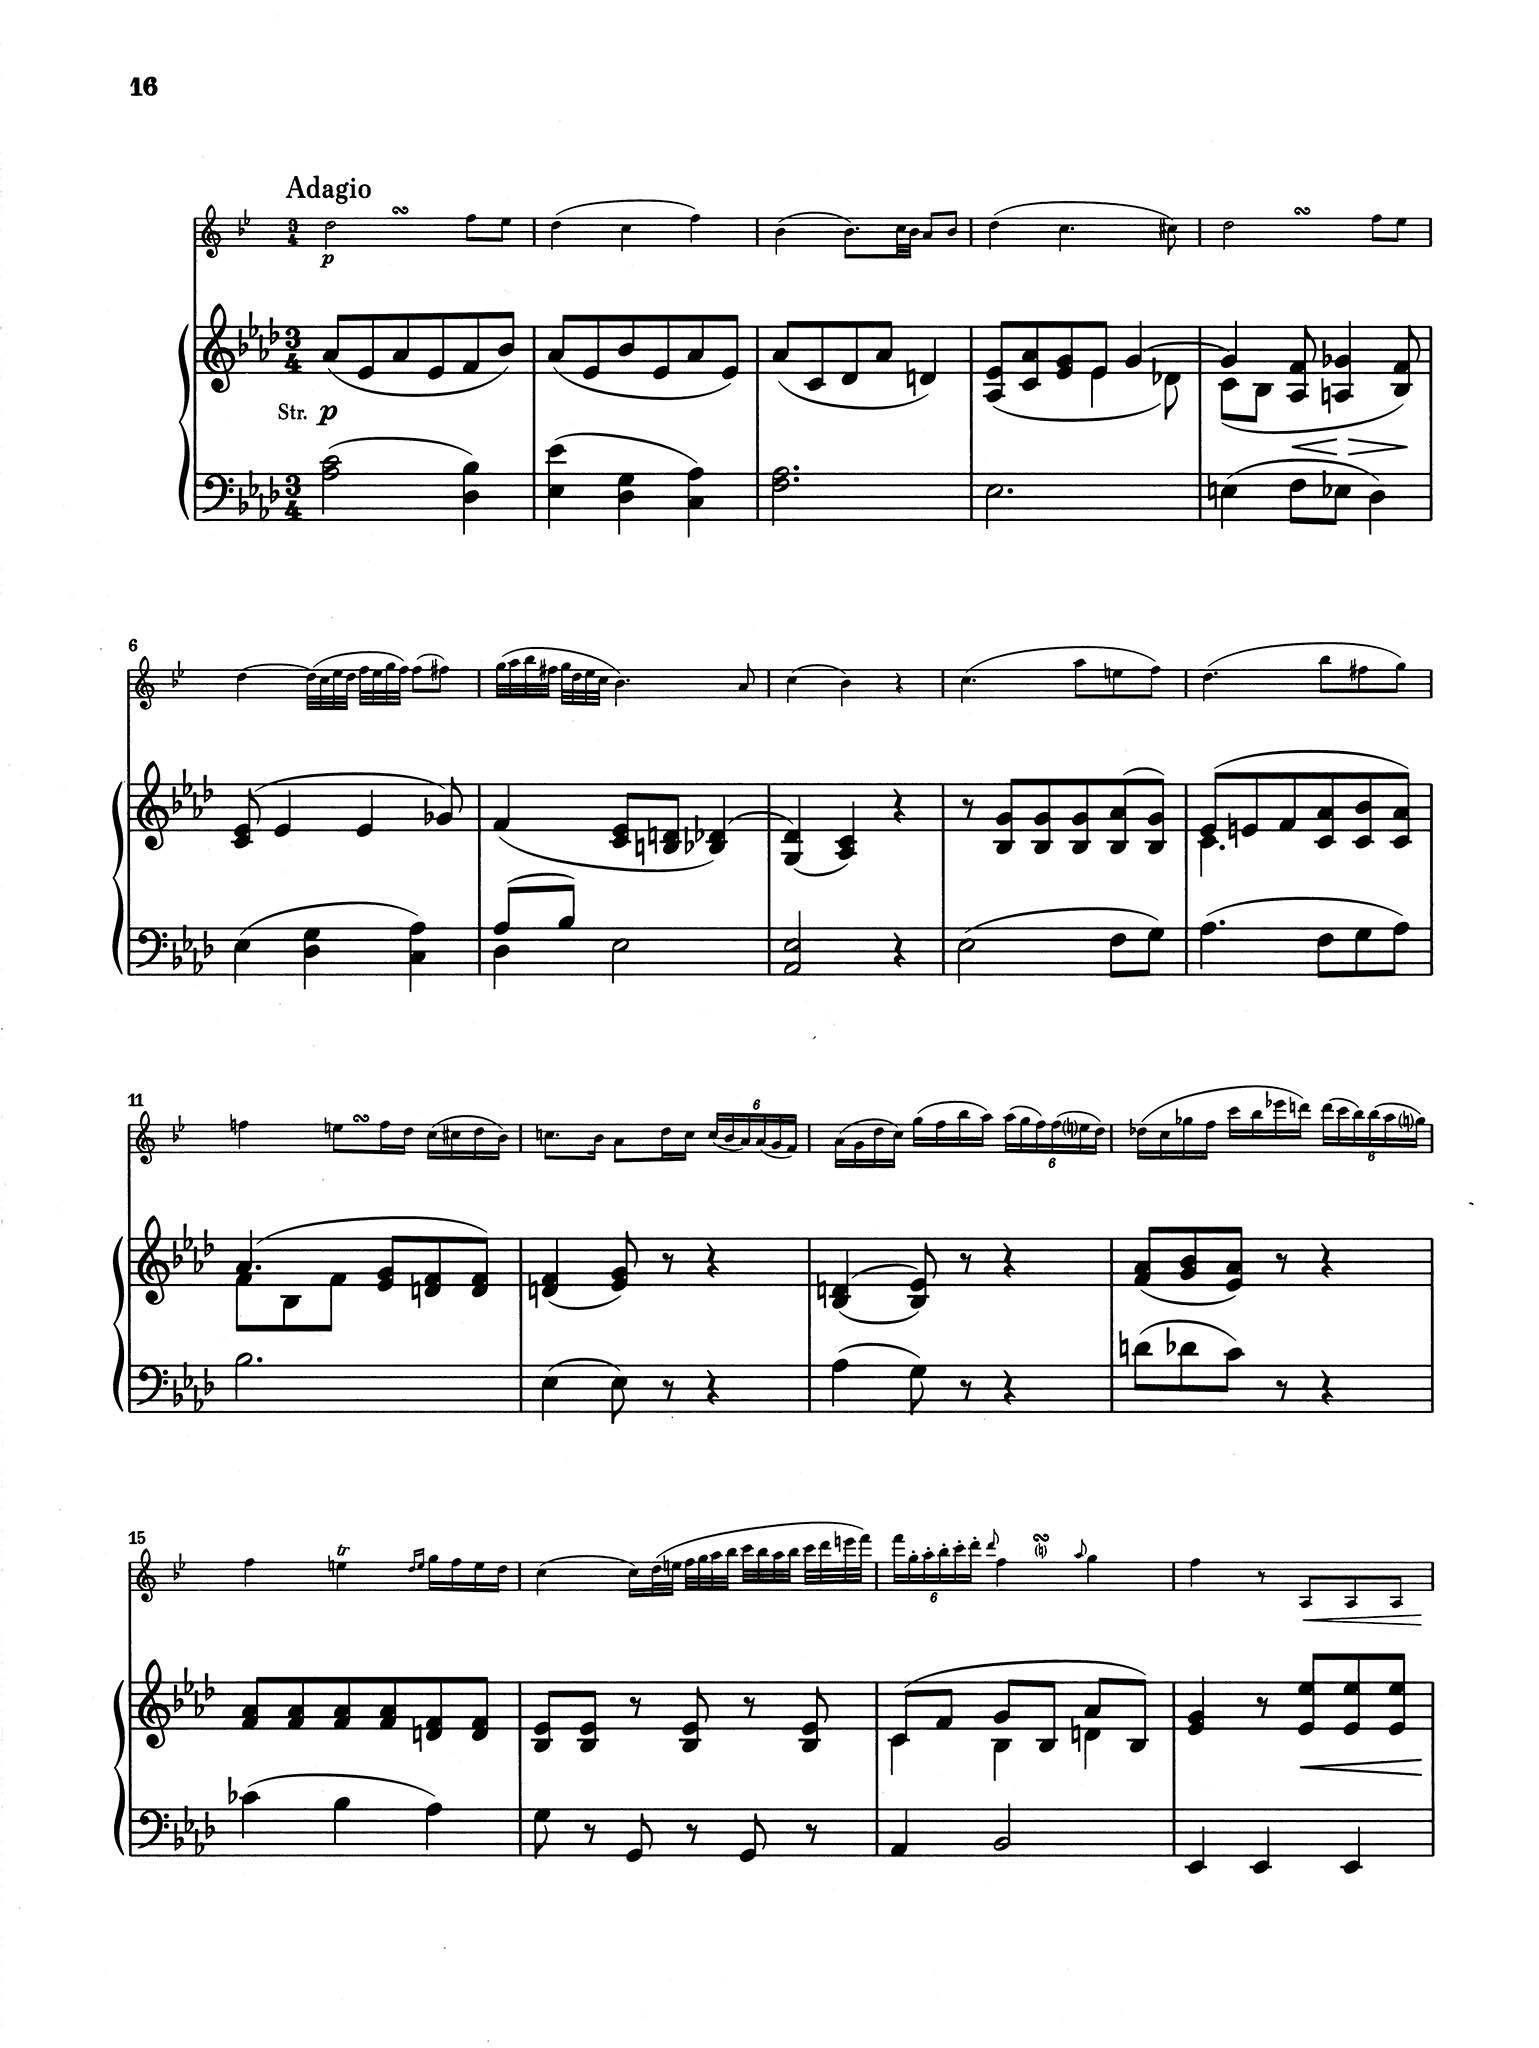 Clarinet Concerto No. 1 in C Minor, Op. 26 - Movement 2